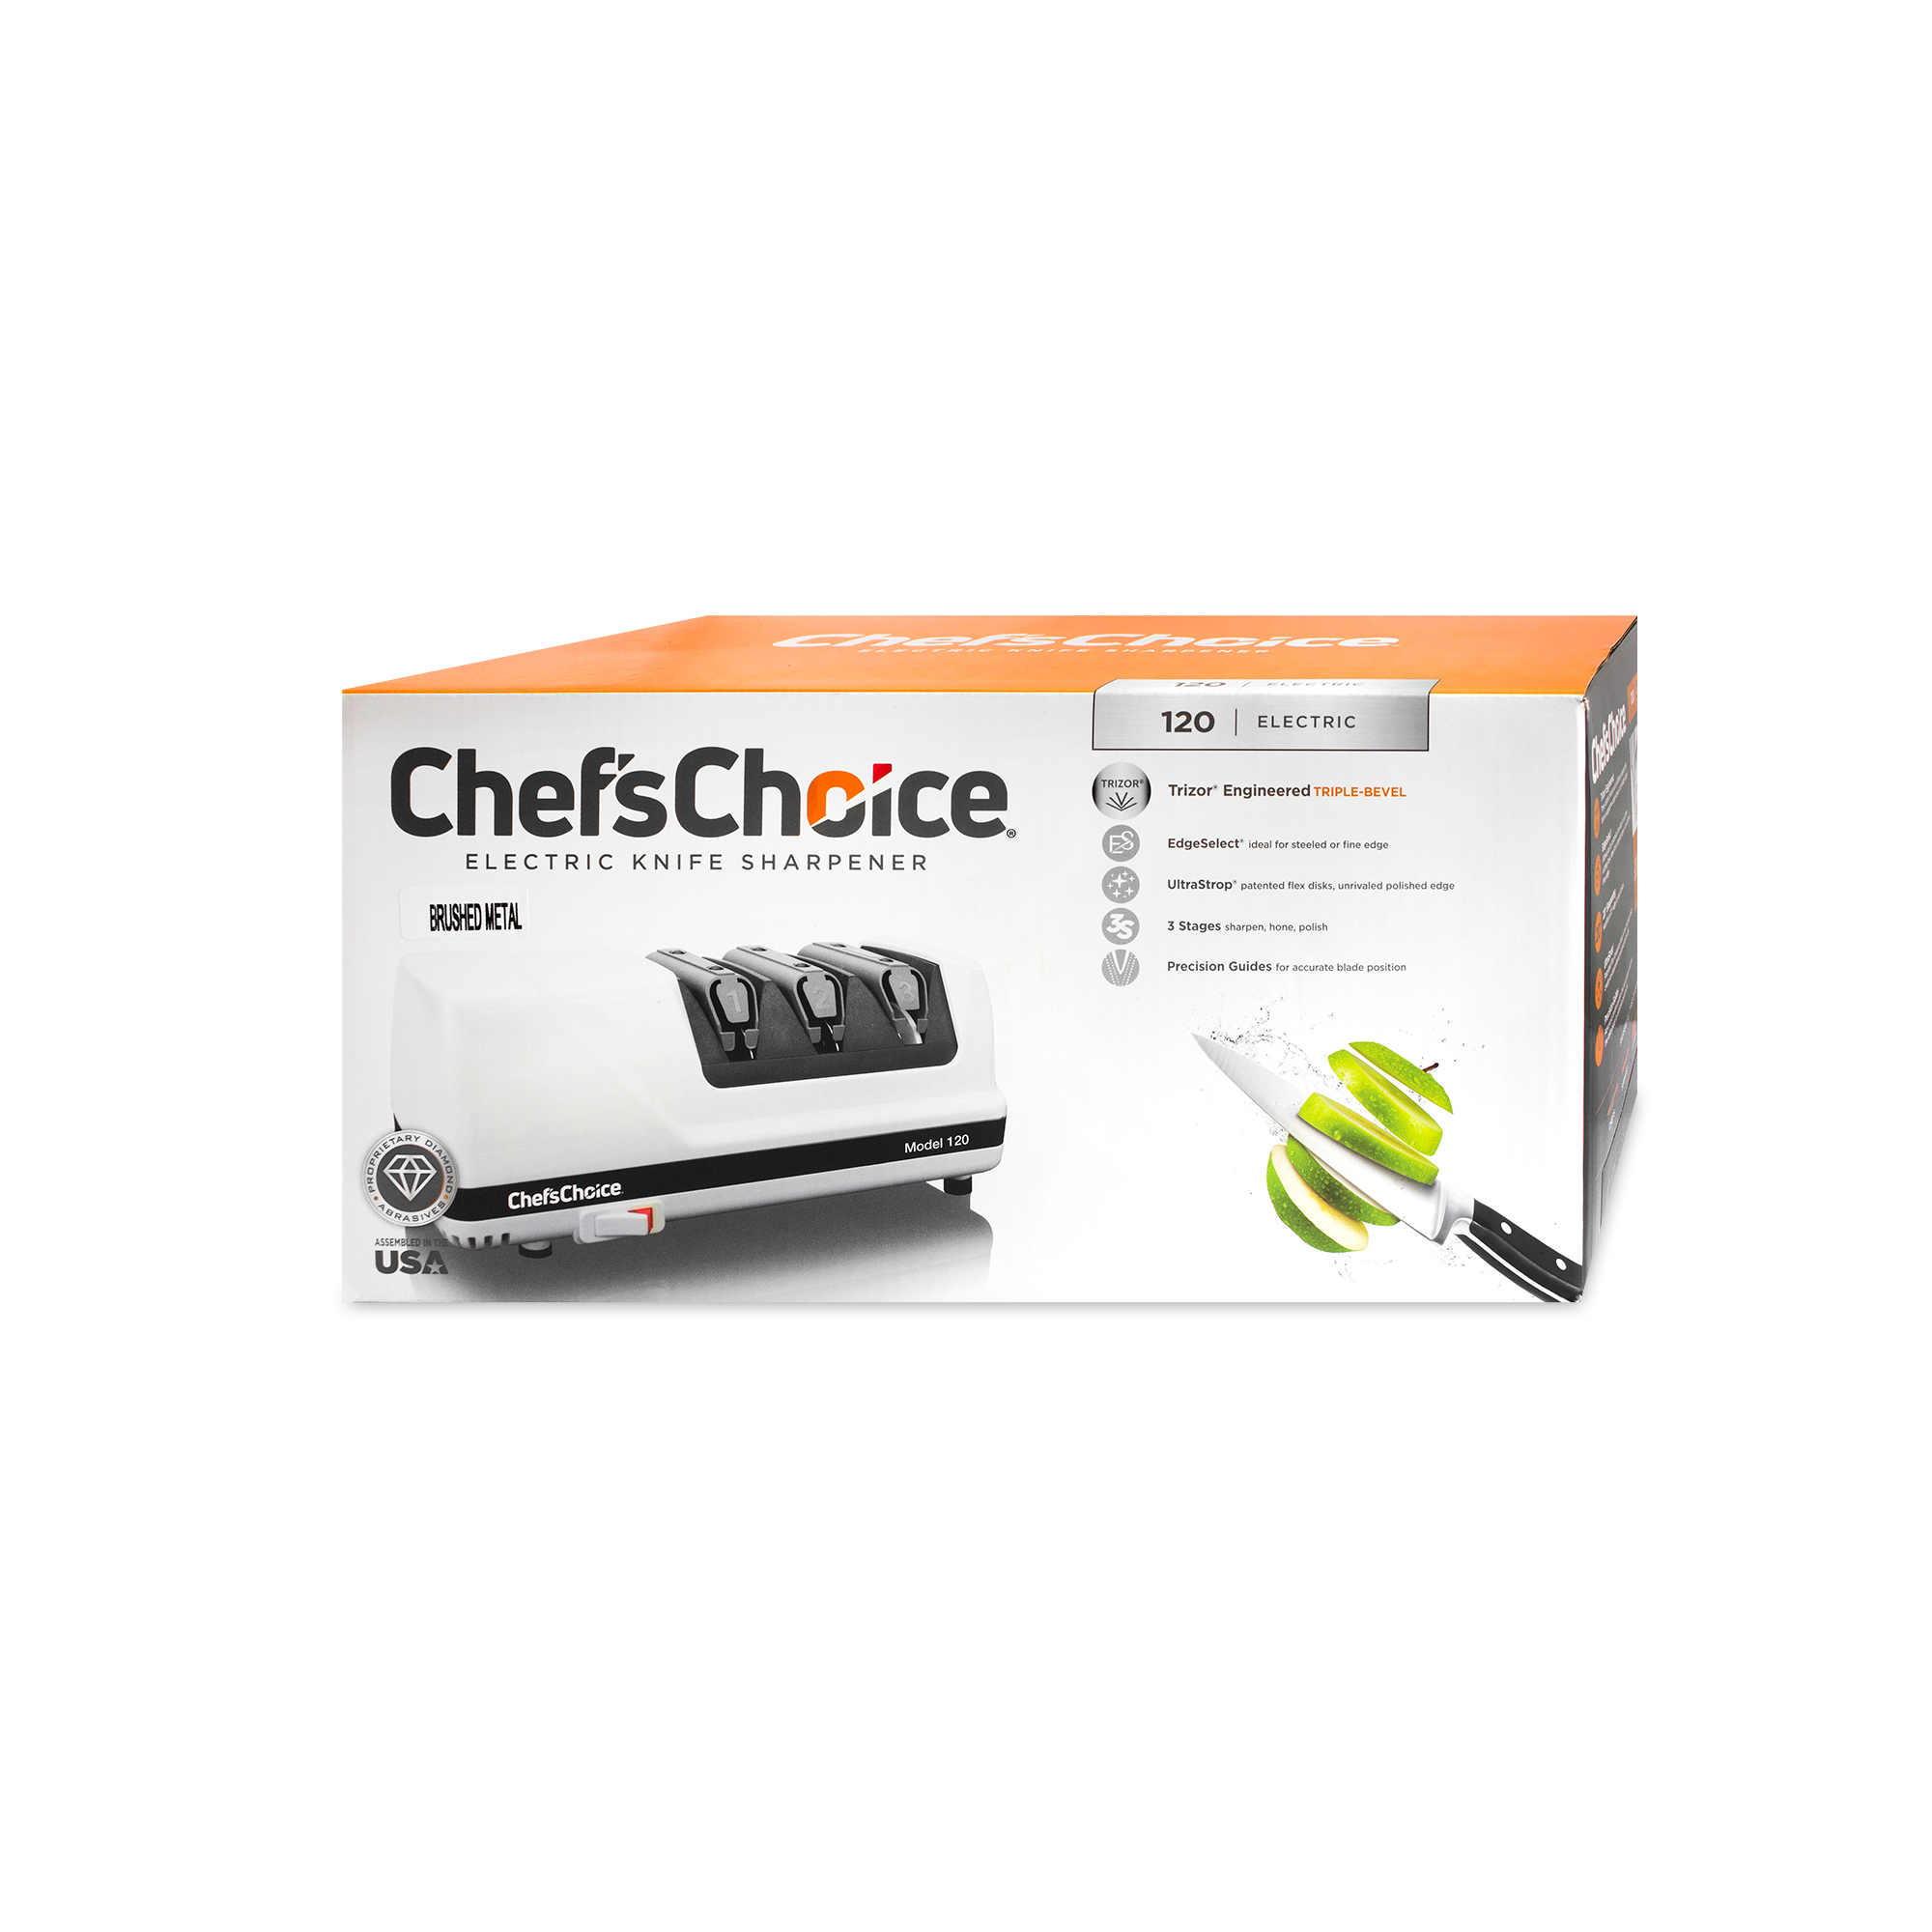 фото Электрический станок для заточки ножей chef’schoice cc120m